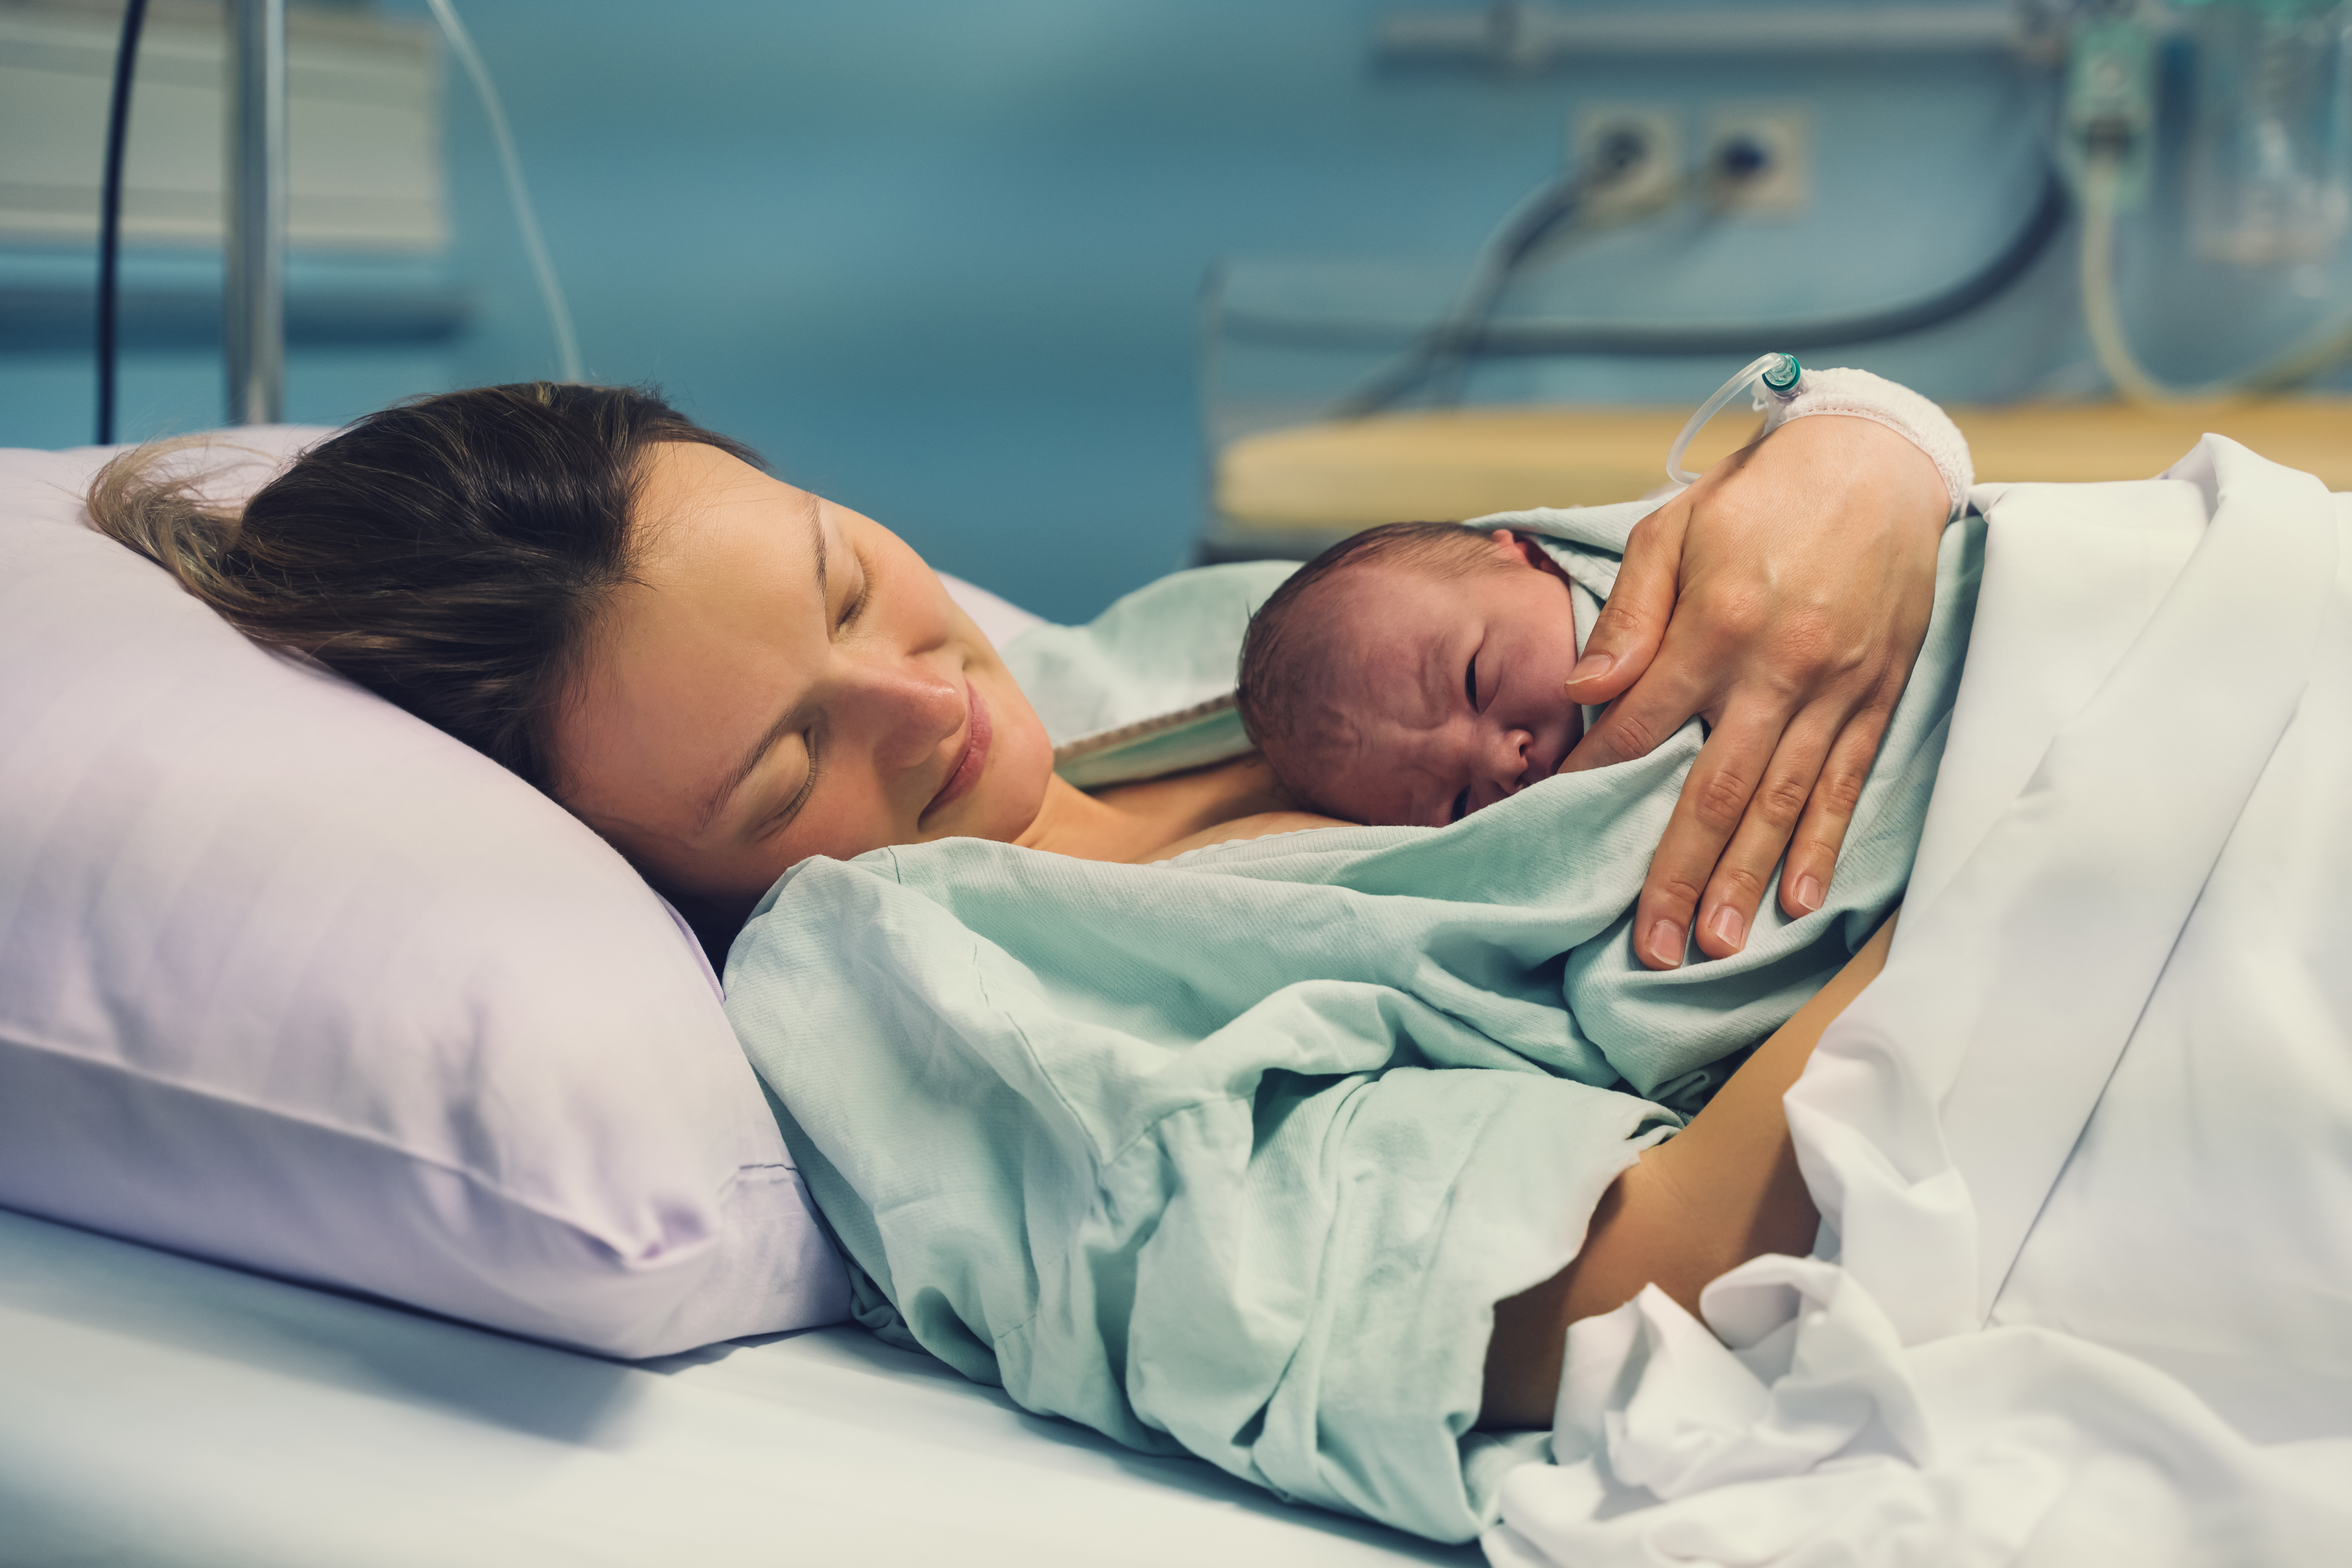 Frau und hält ihr Neugeborenes leidenschaftlich im Arm. | Quelle: Shutterstock